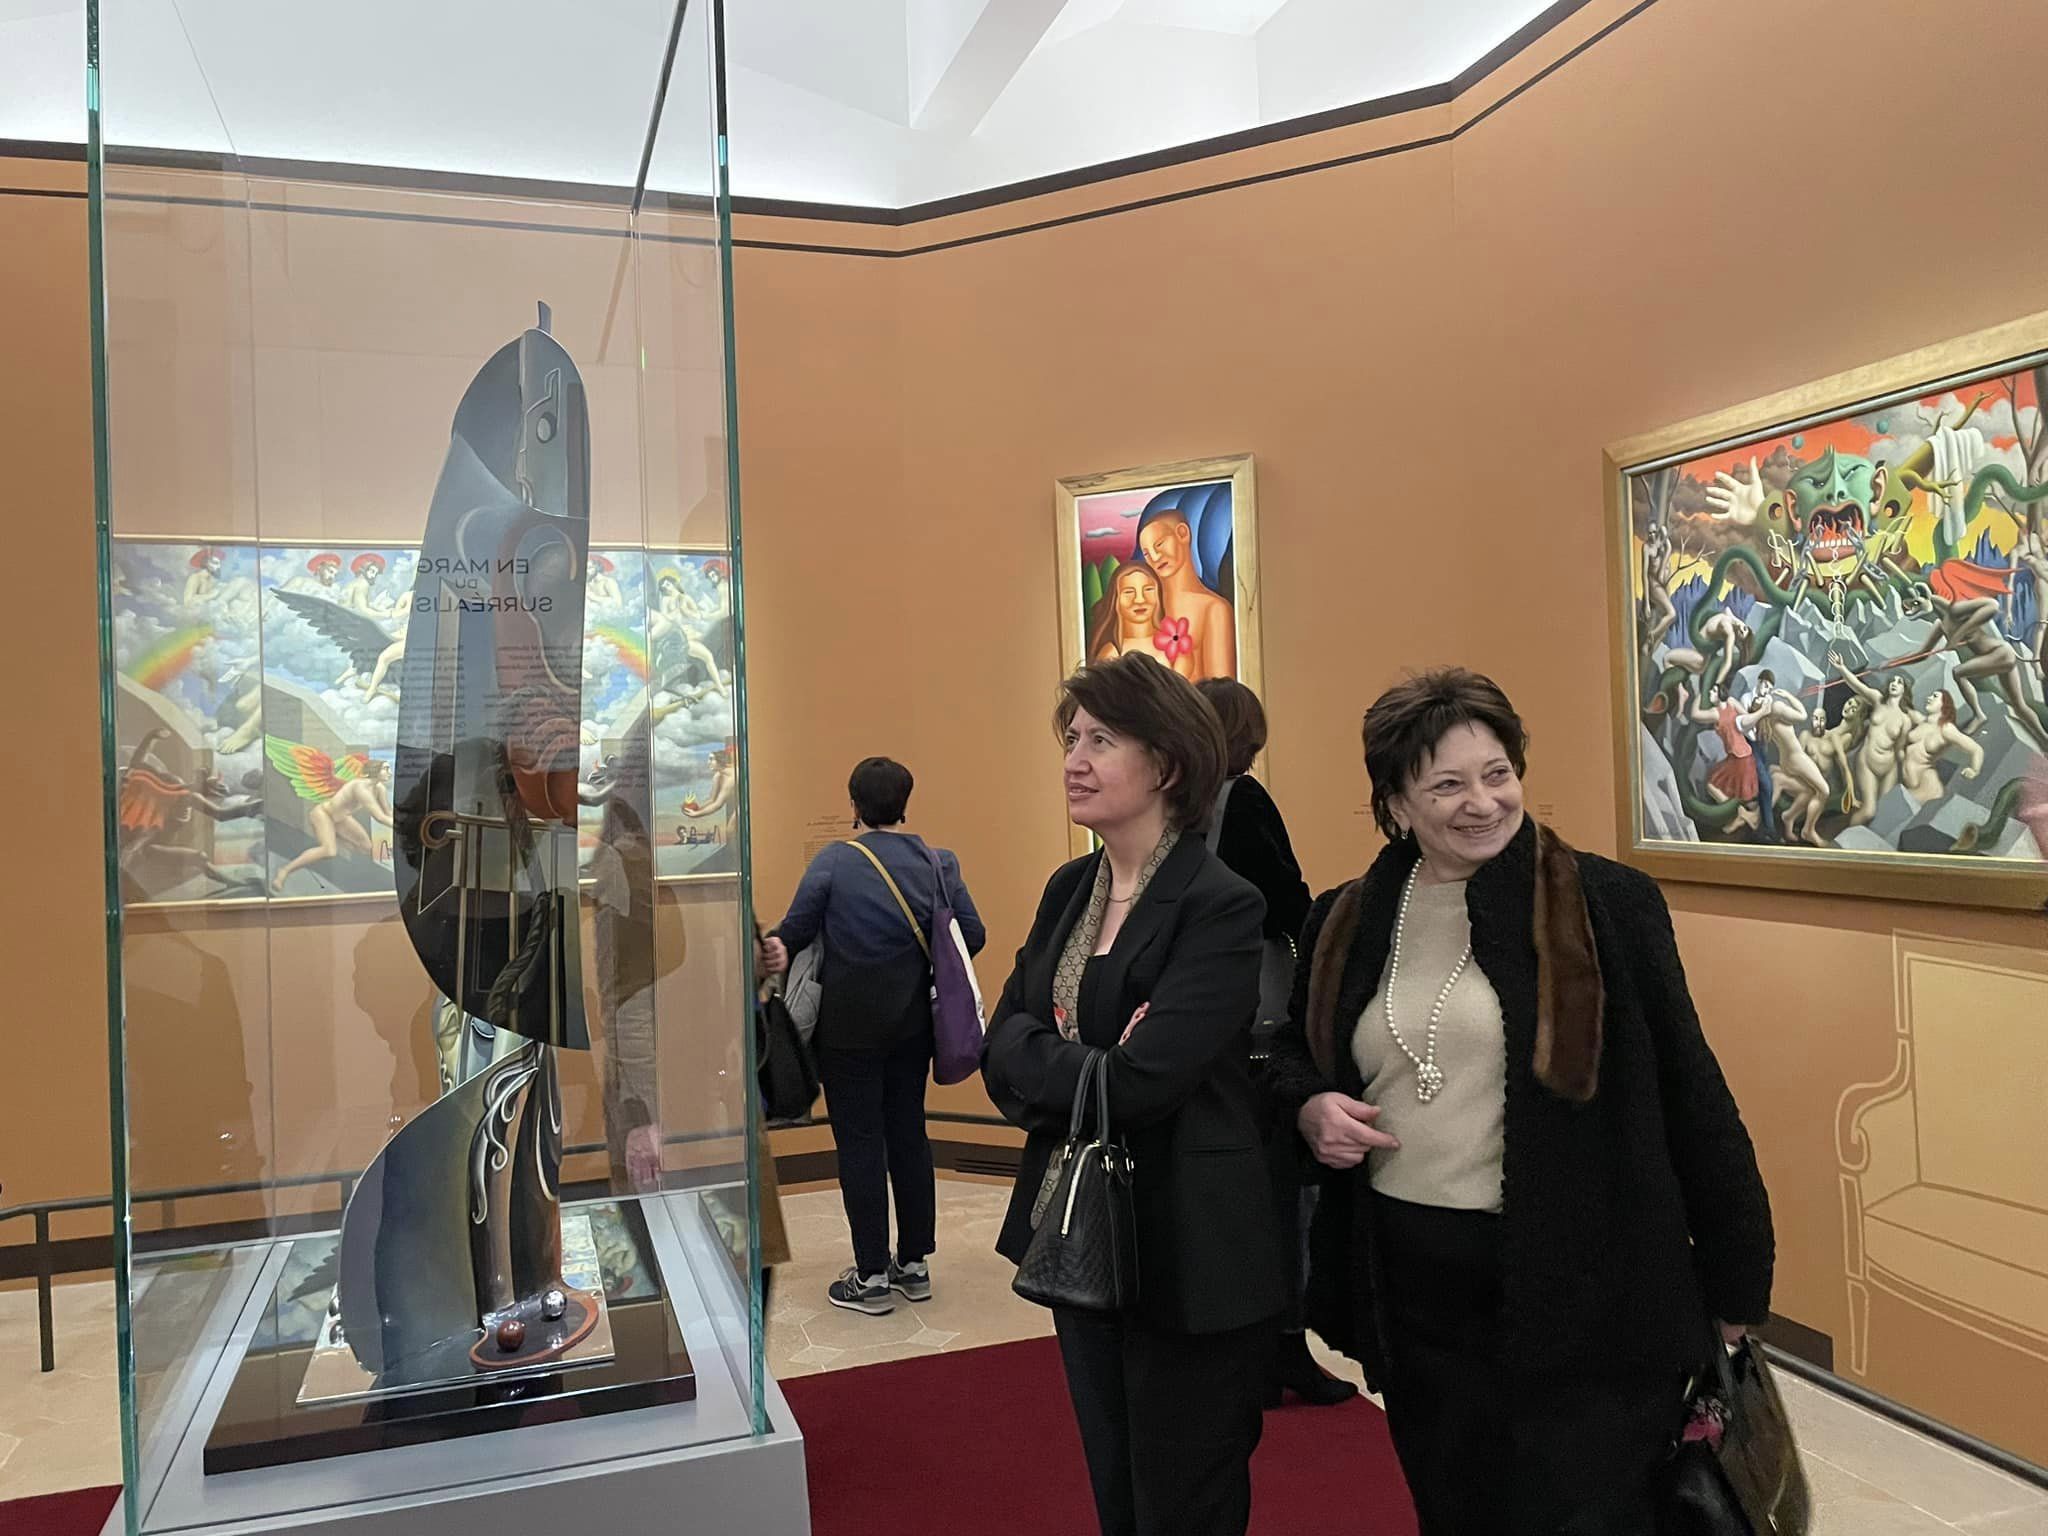 Փարիզի Պիկասոյի թանգարանում բացվել է ցուցադրություն, որտեղ ներառված է Երվանդ Քոչարի ստեղծած տարածանկարը (լուսանկարներ)